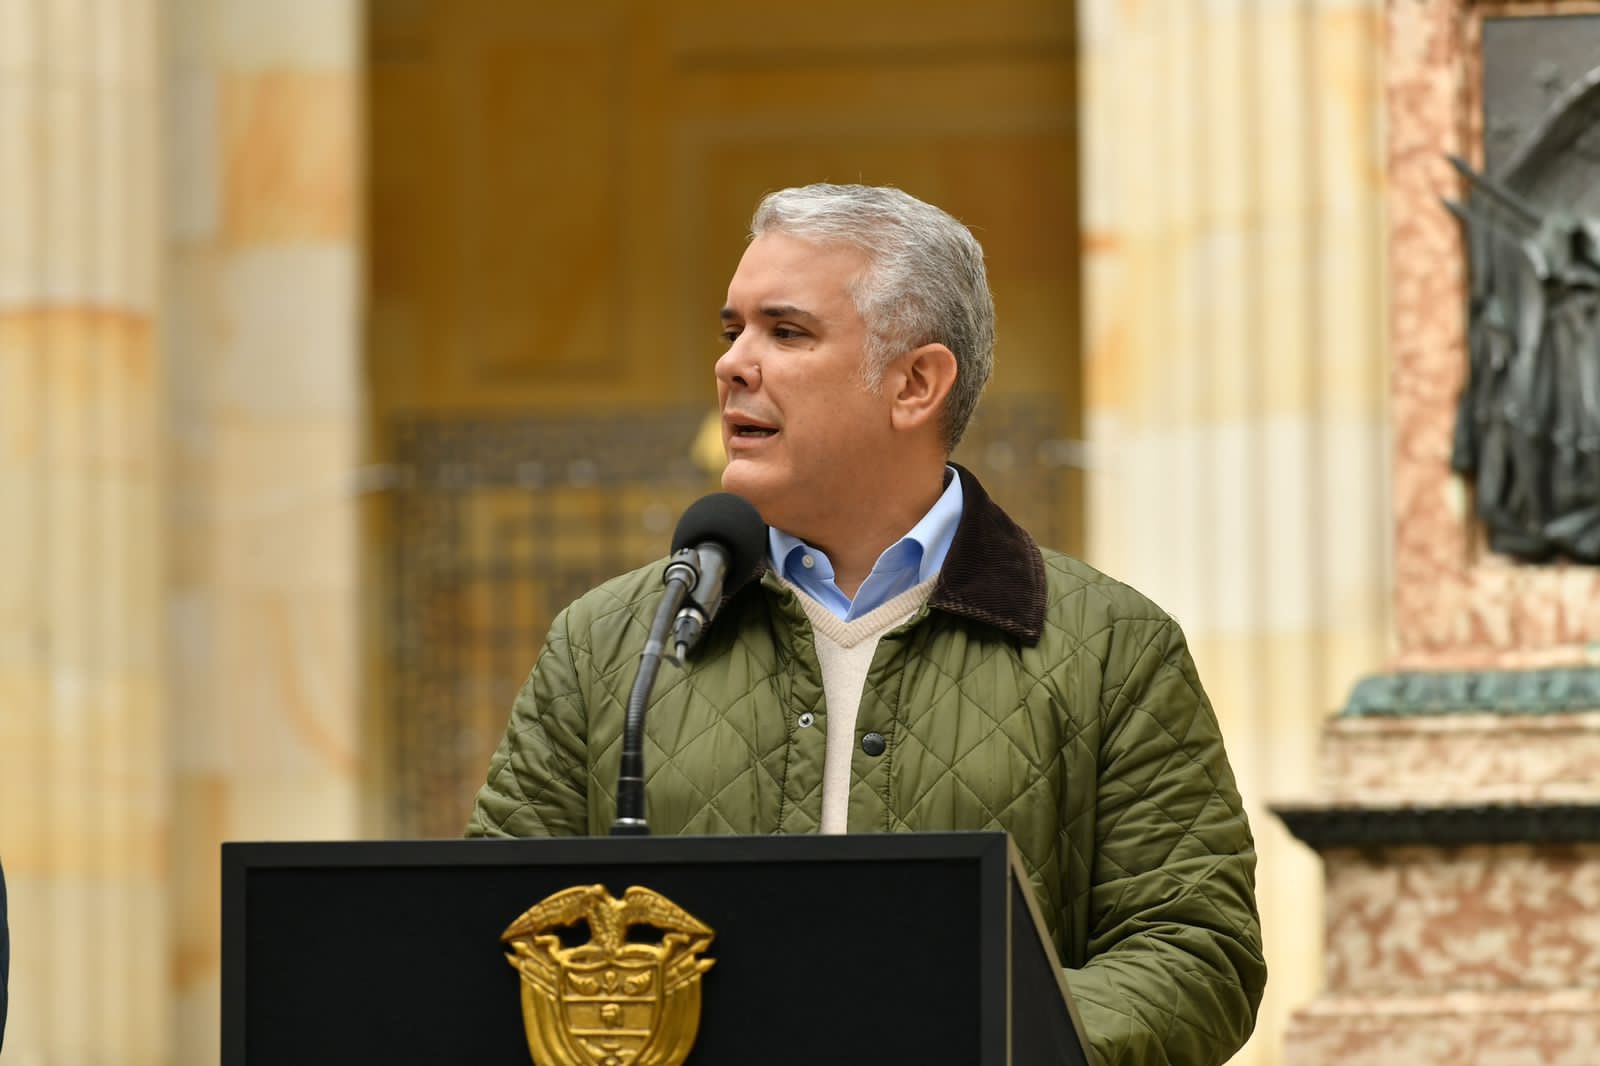 Hoy tenemos que ir a las urnas a proteger nuestra democracia”: el presidente  Iván Duque abrió oficialmente la jornada electoral en Colombia - Infobae